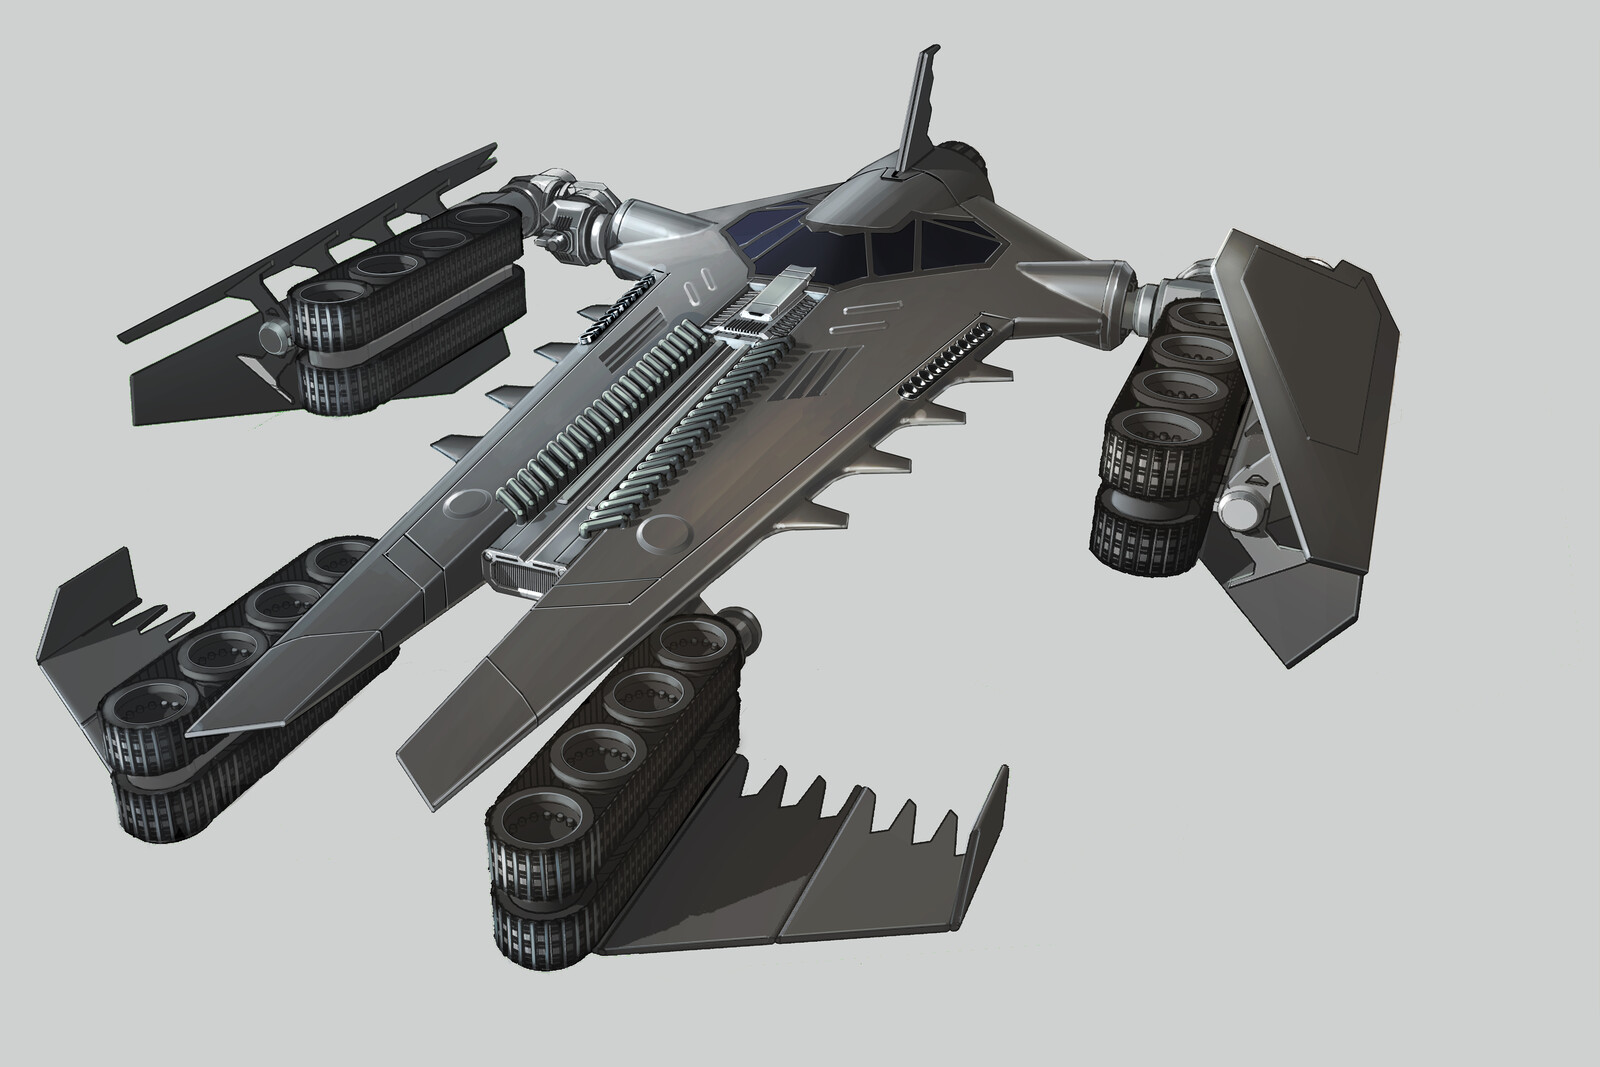 Batwing to Bat Tank transformation toy design